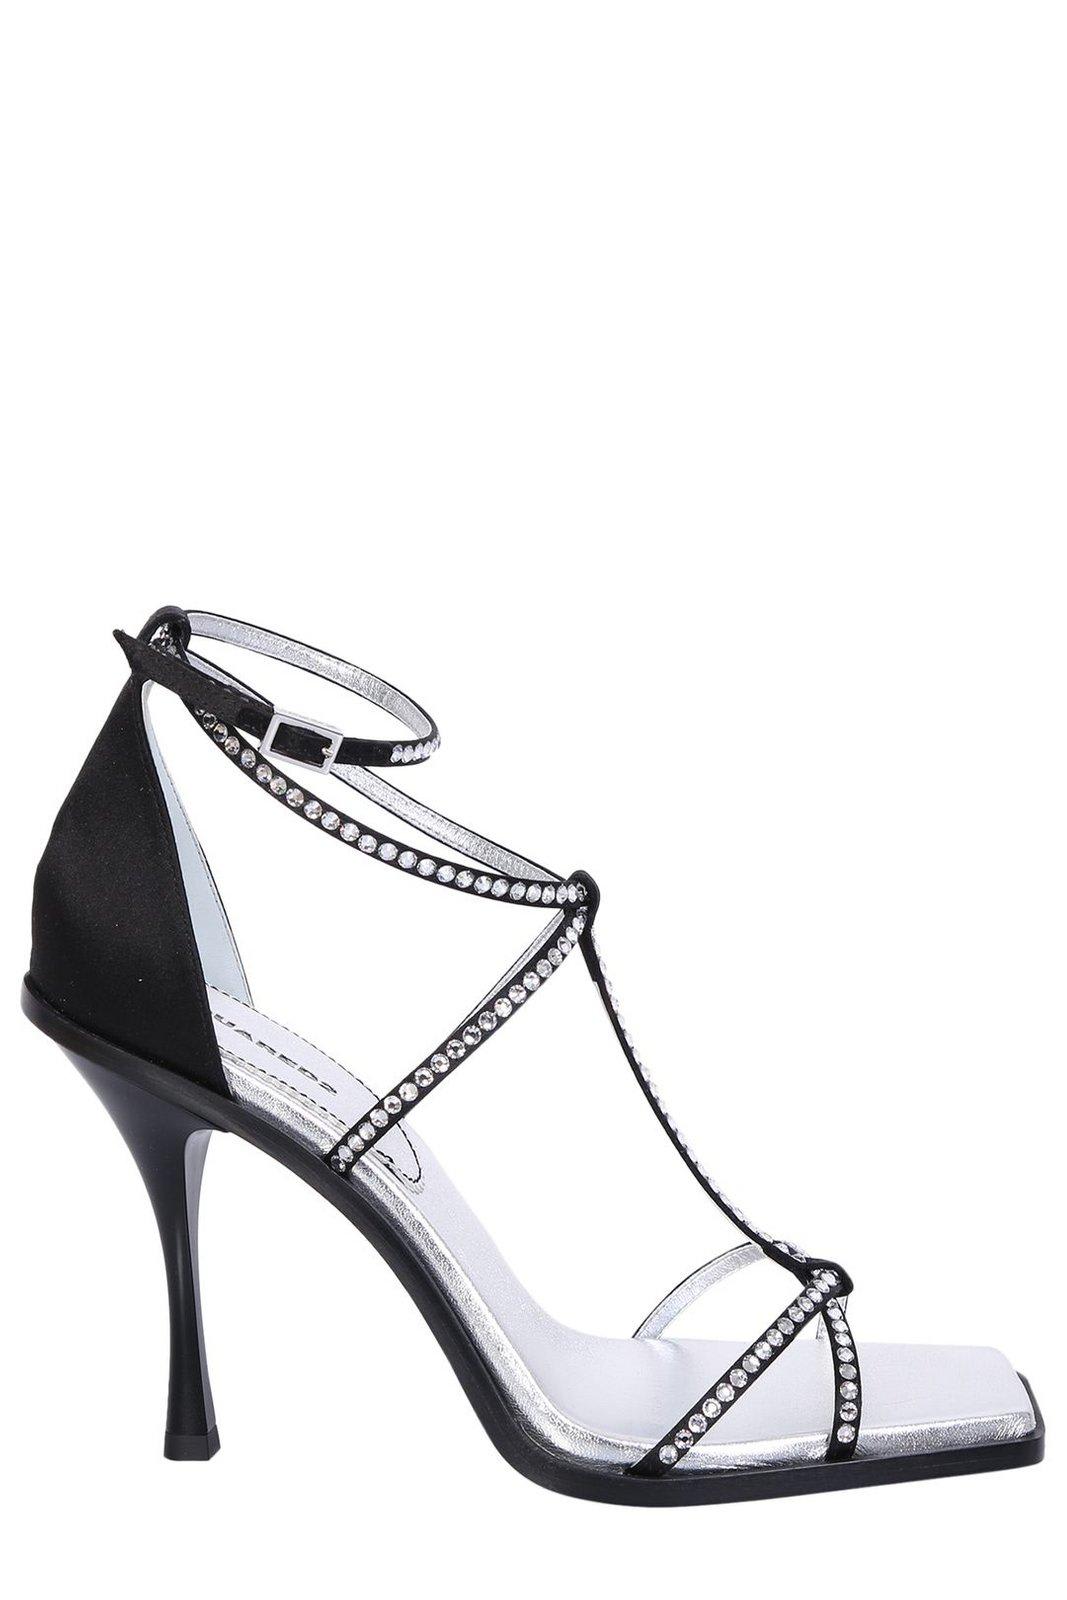 Shop Dsquared2 Embellished Open Toe Sandals In Black/silver